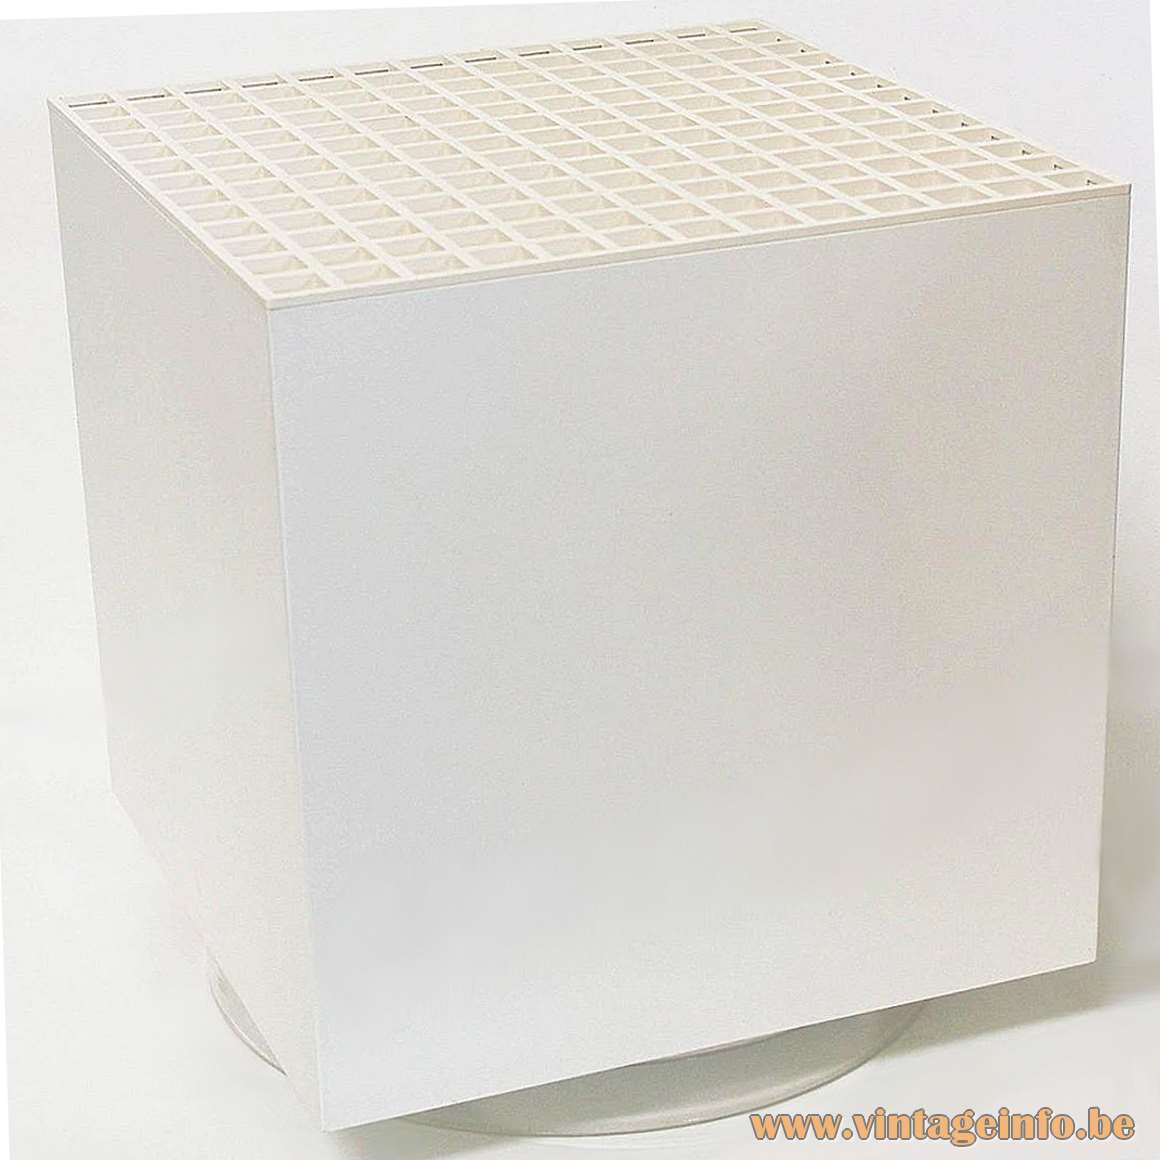 Cuboluce Floor Lamp 1972 design: Franco Bettonica Mario Melocchi Studio Opi plastic cube Cini&Nils 1970s MCM